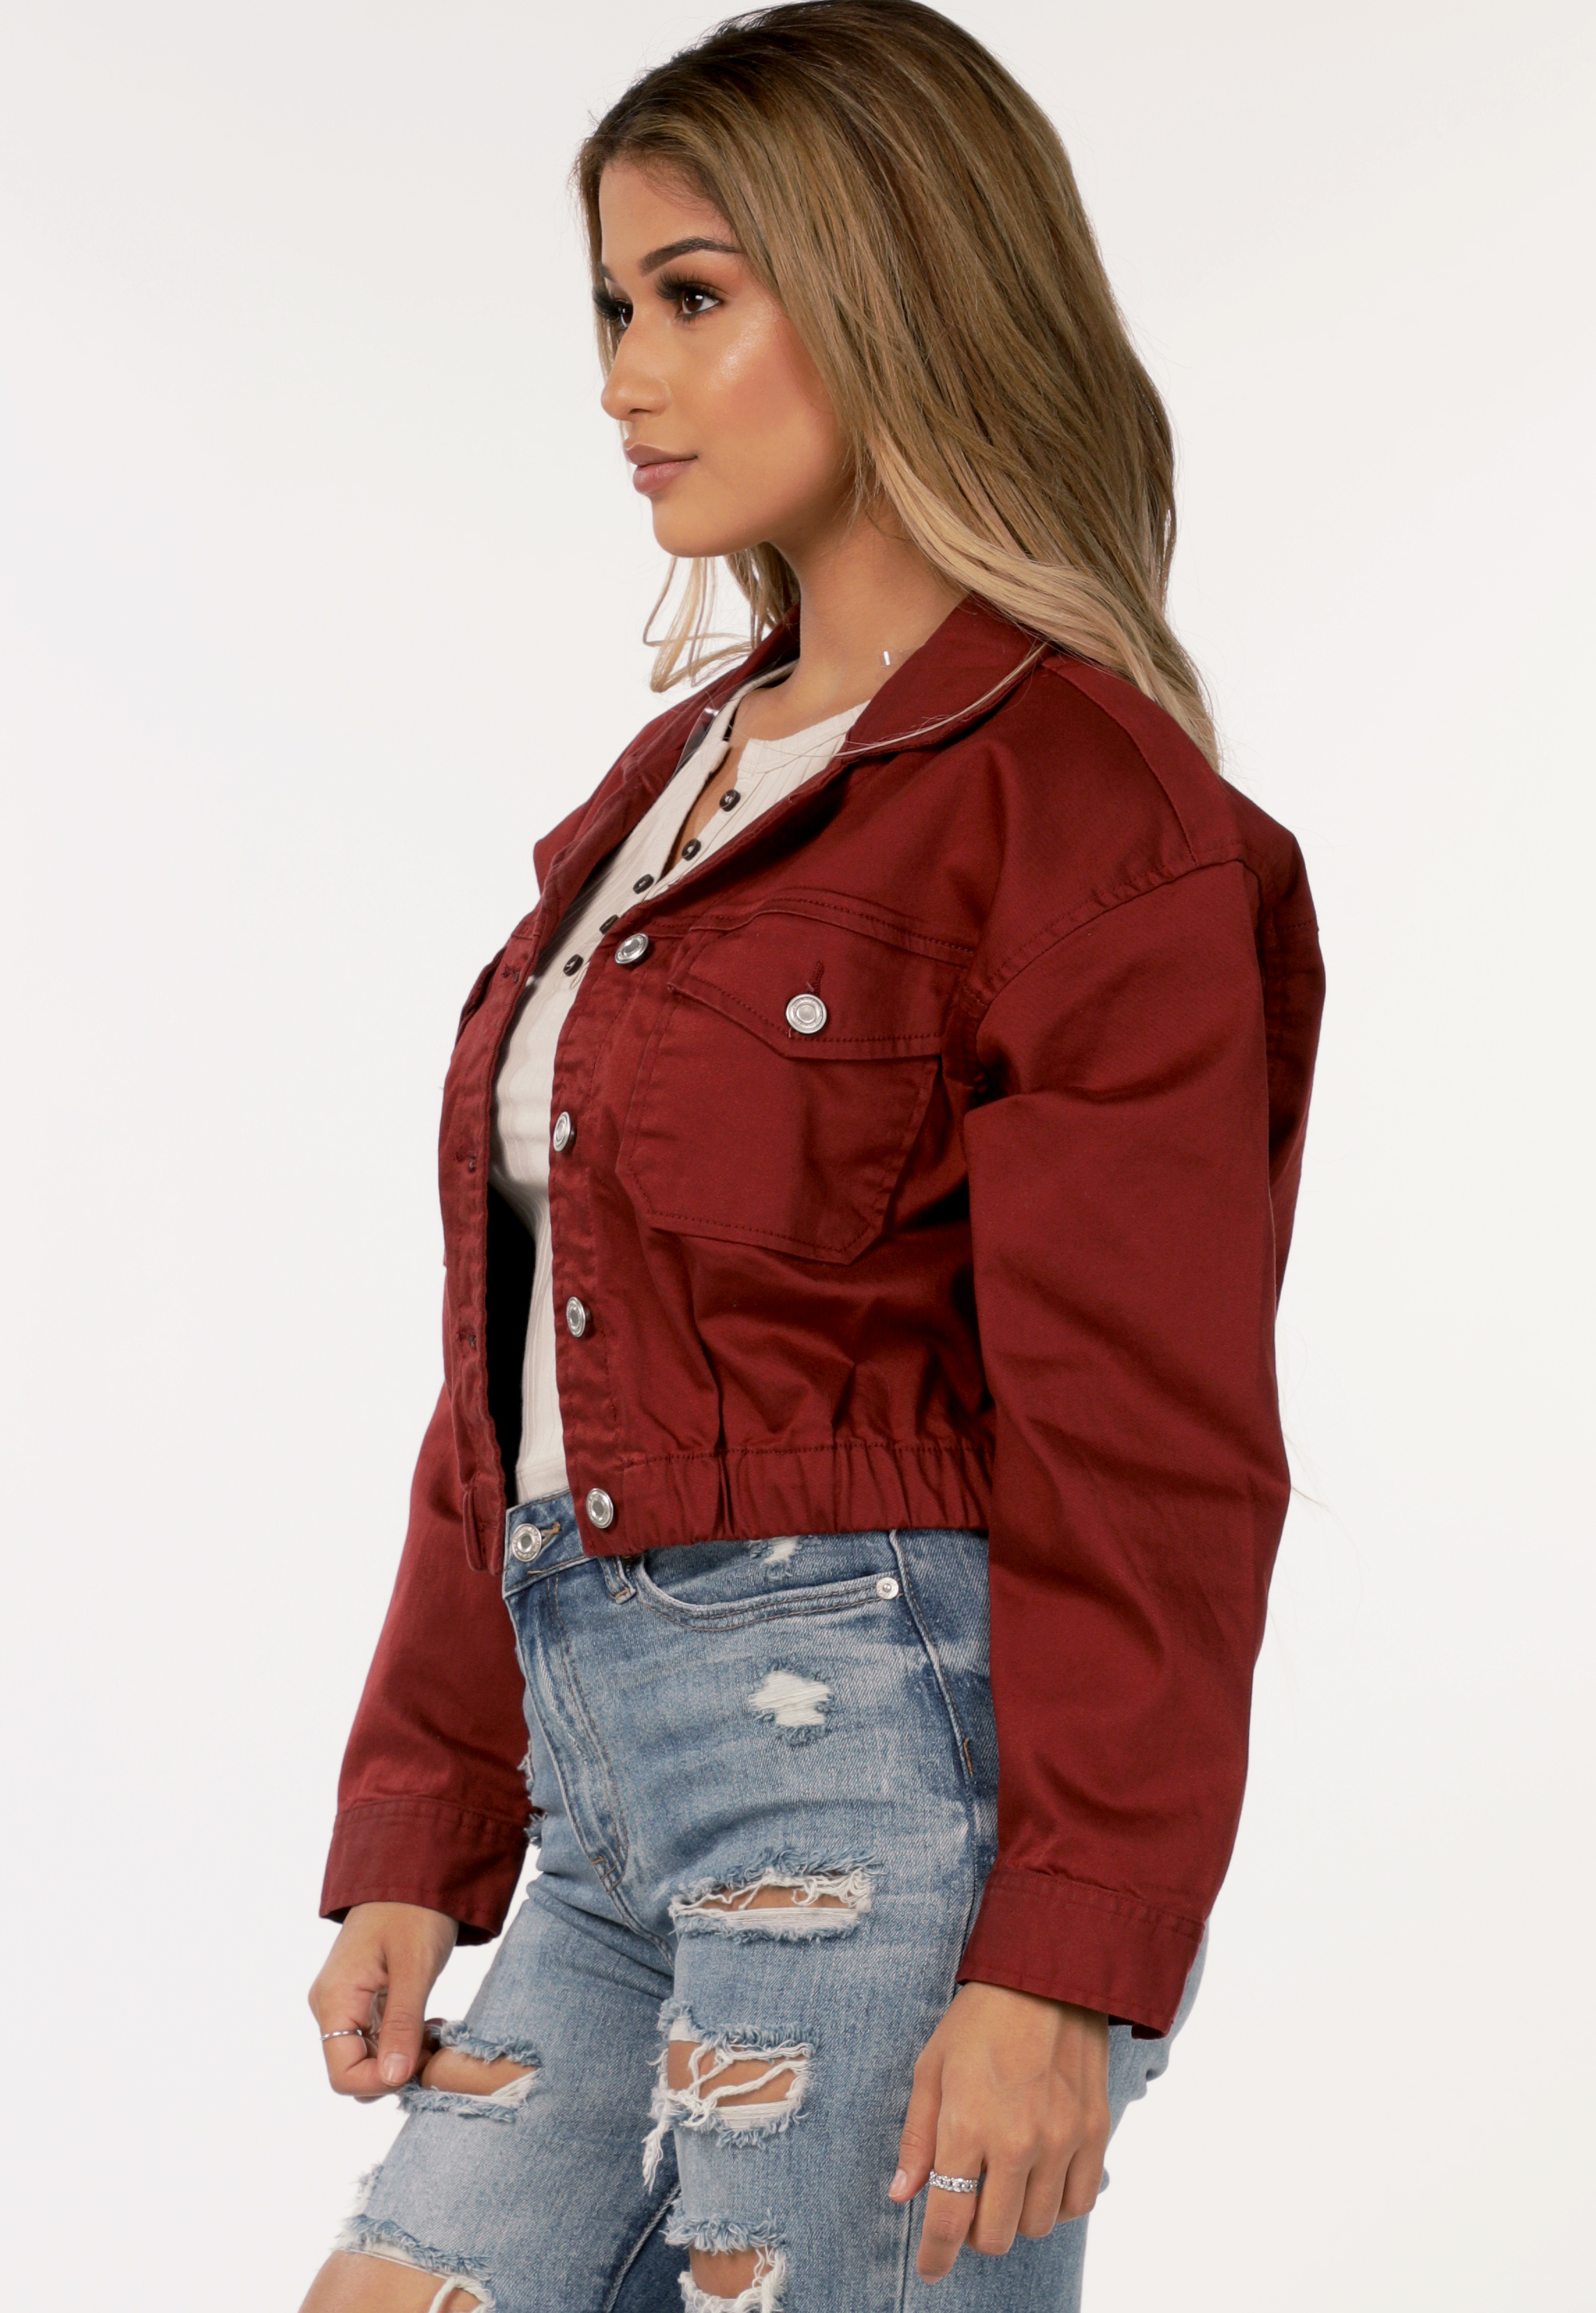 Button Up Jacket | Shop NEW ARRIVALS at Papaya Clothing